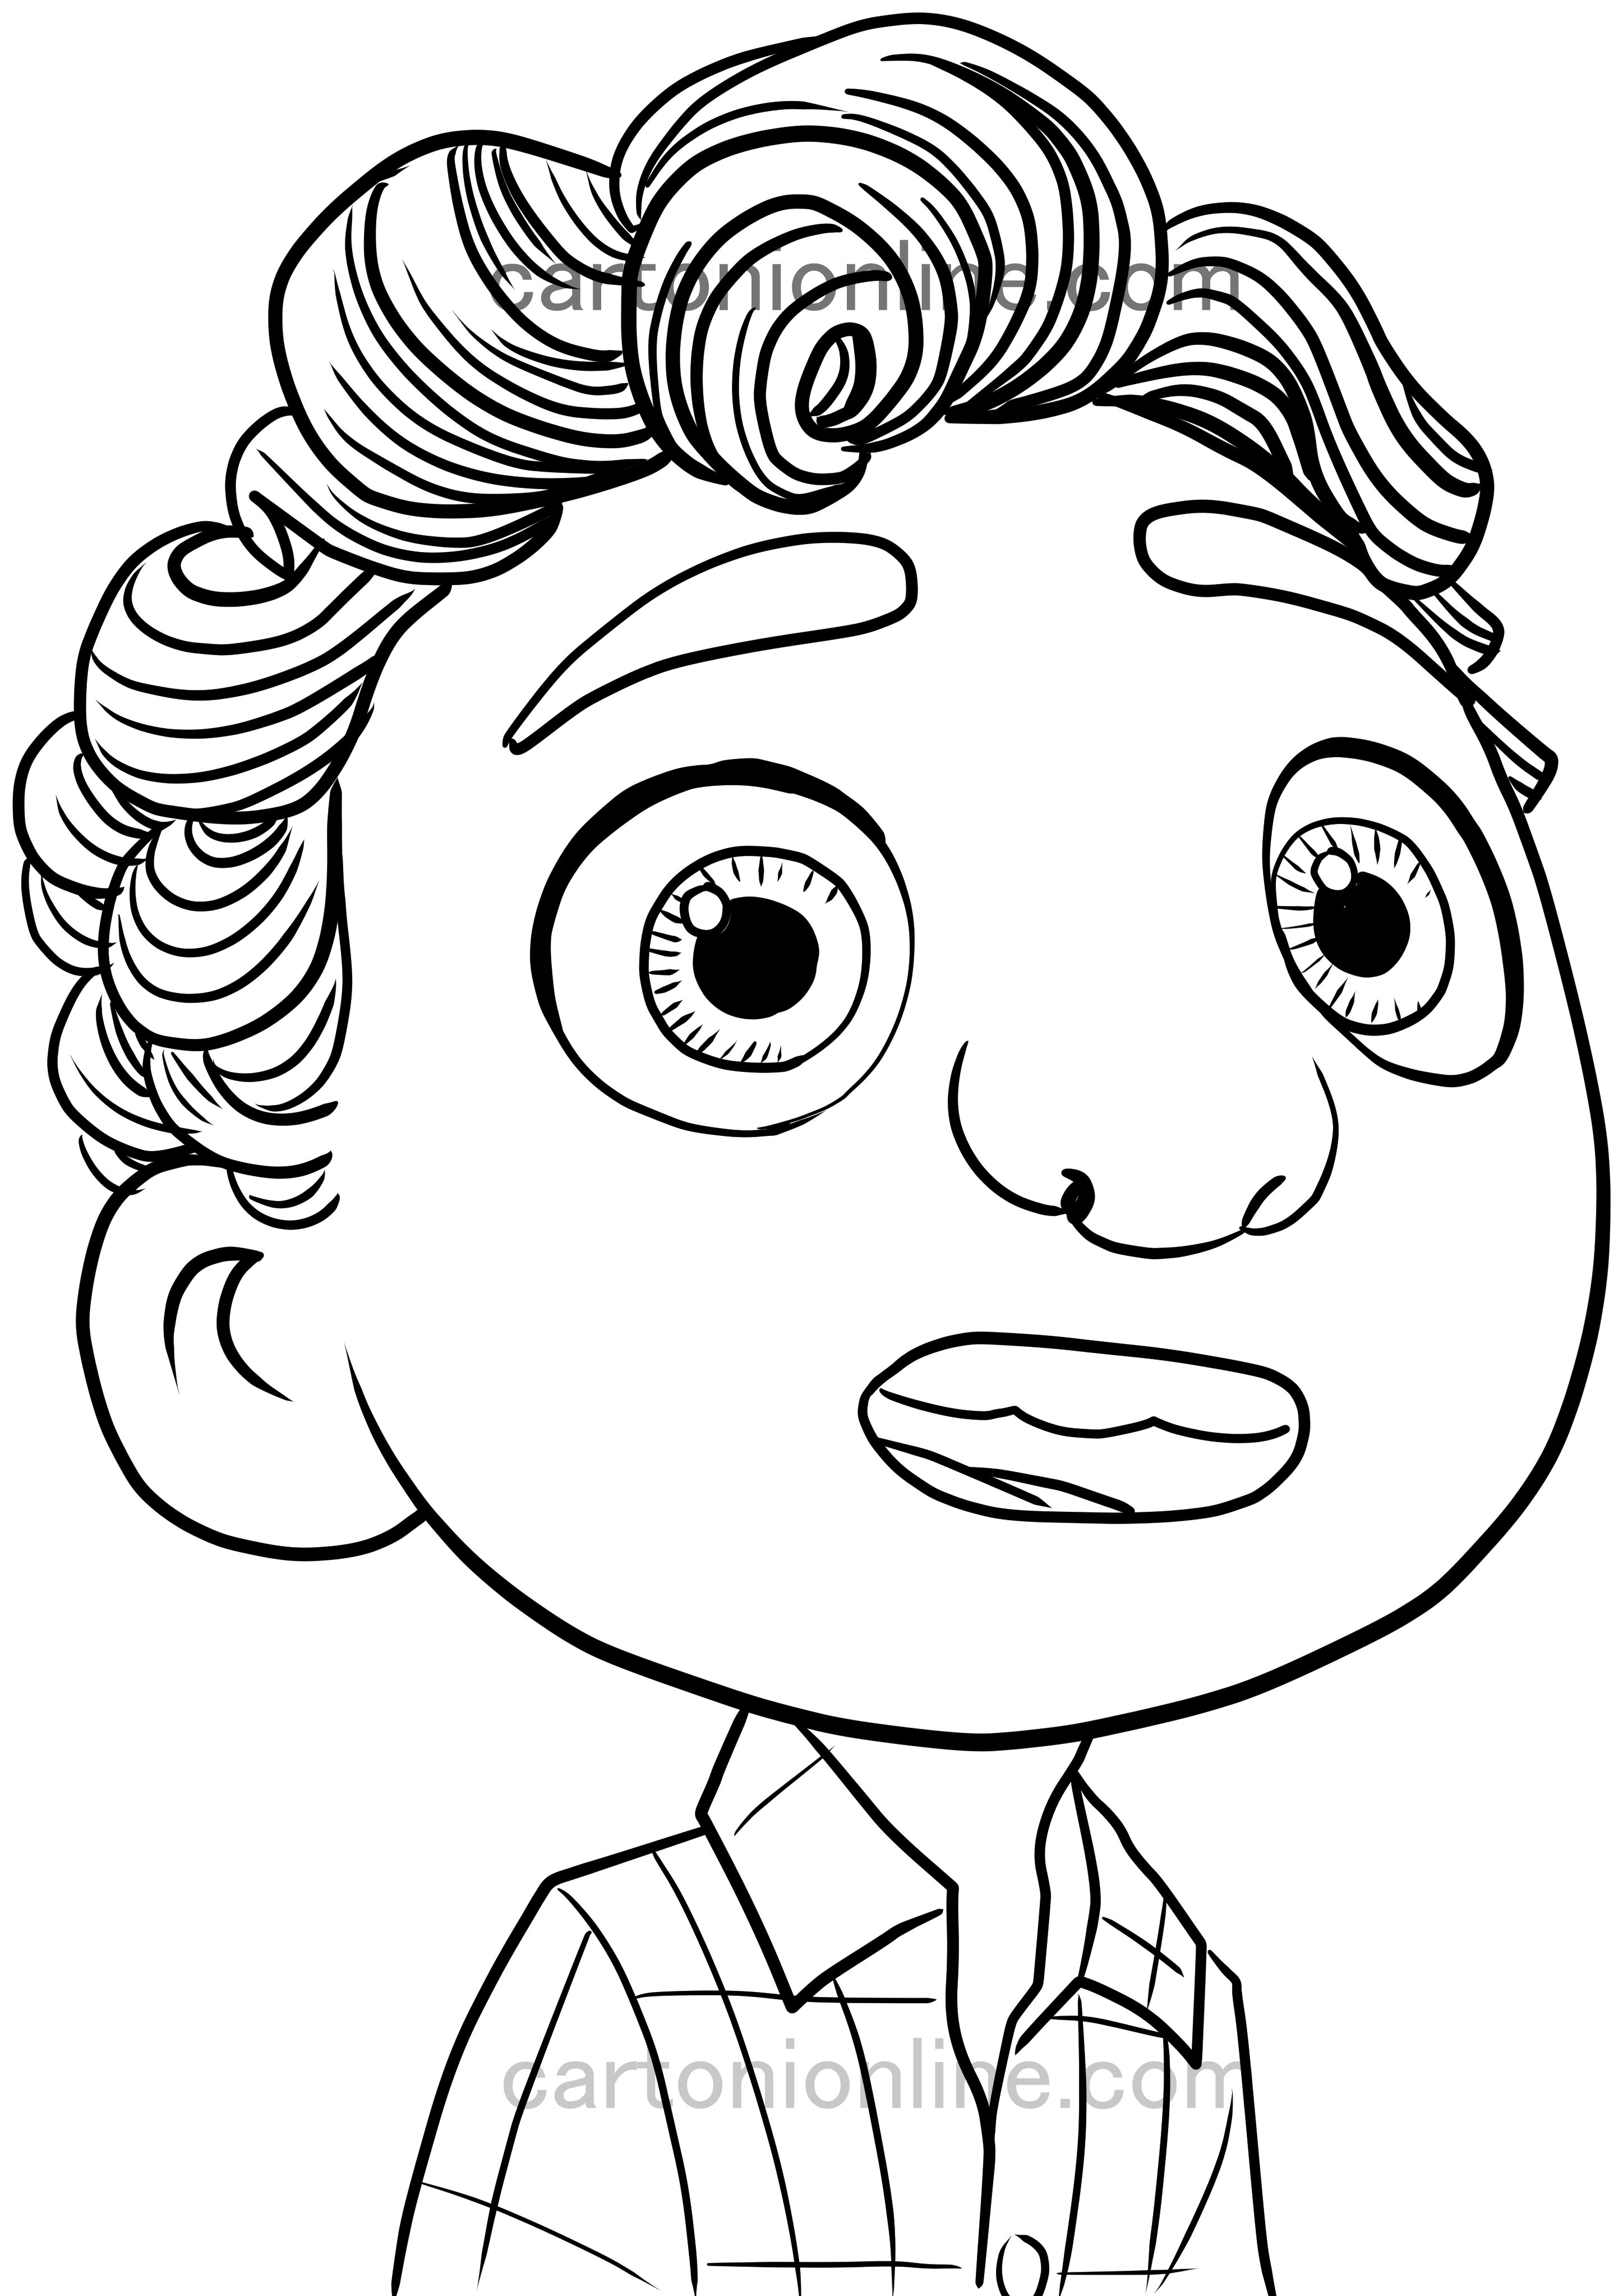 Luca Paguro zeichnet nach dem Disney-Pixar-Film „Luca“ zum Ausdrucken und Ausmalen